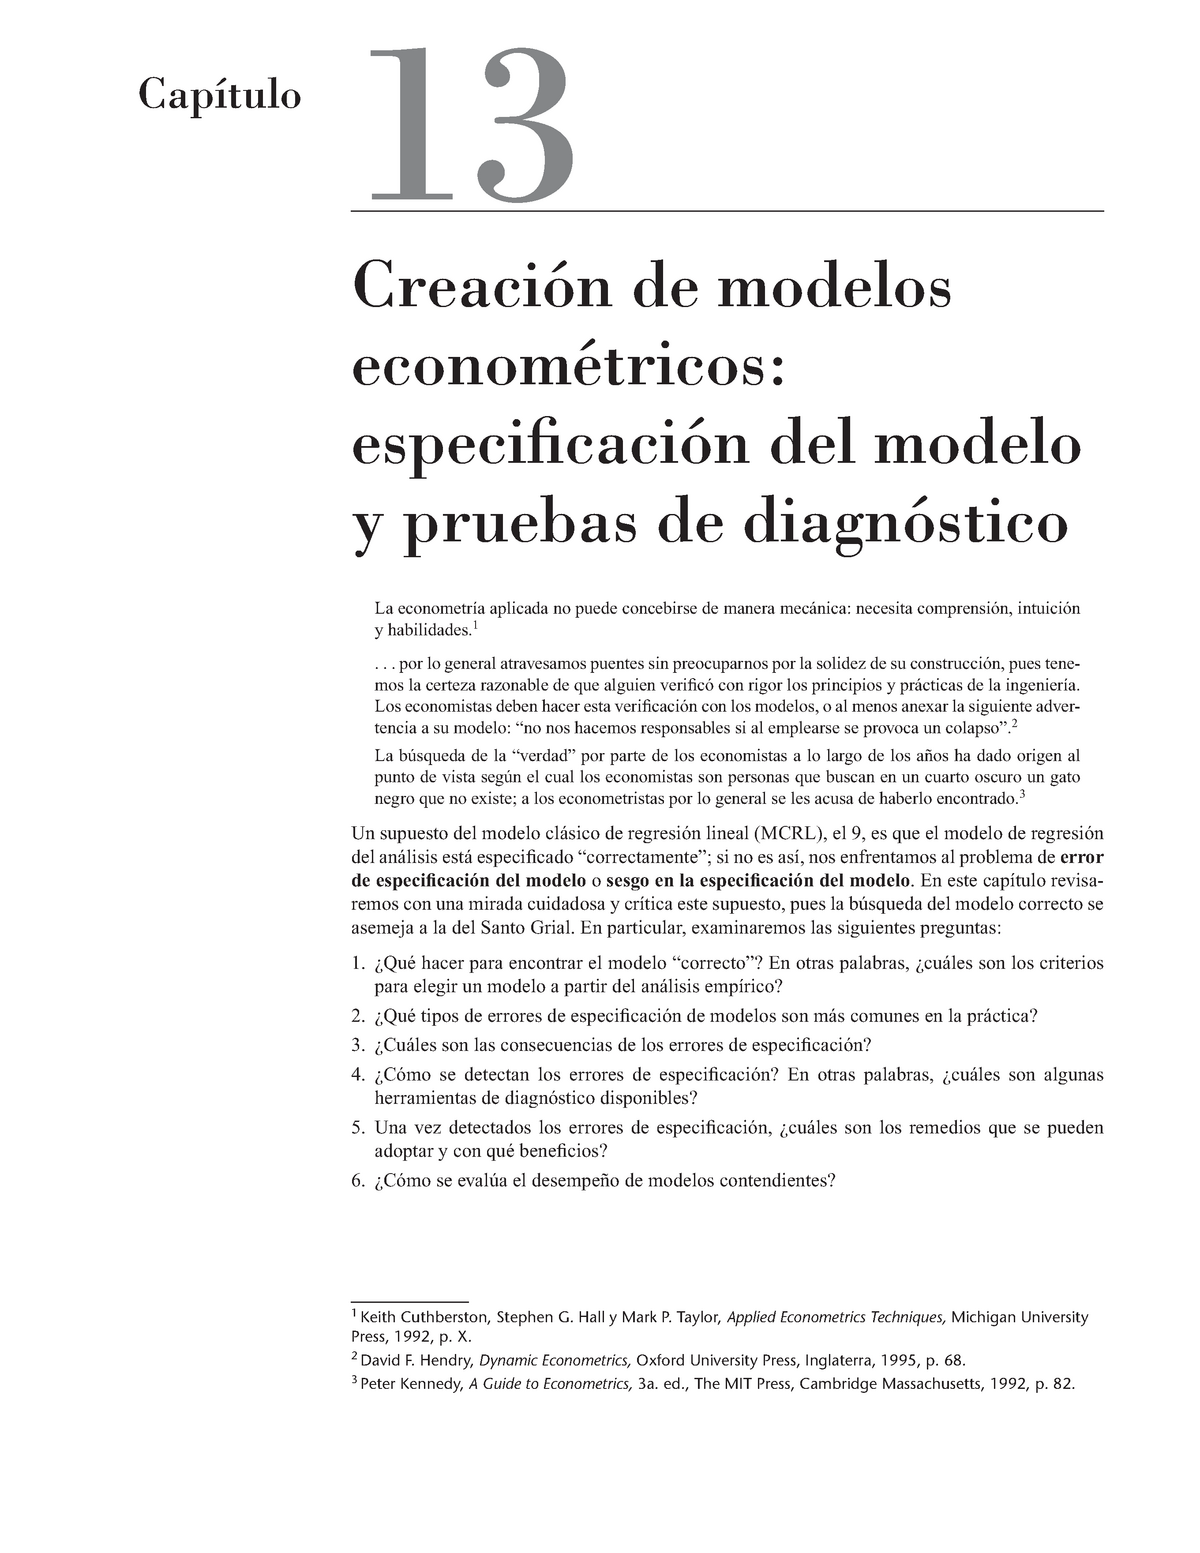 Específicación del modelo econométrico, Gujarati - 1 Keith Cuthberston,  Stephen G. Hall y Mark P. - Studocu